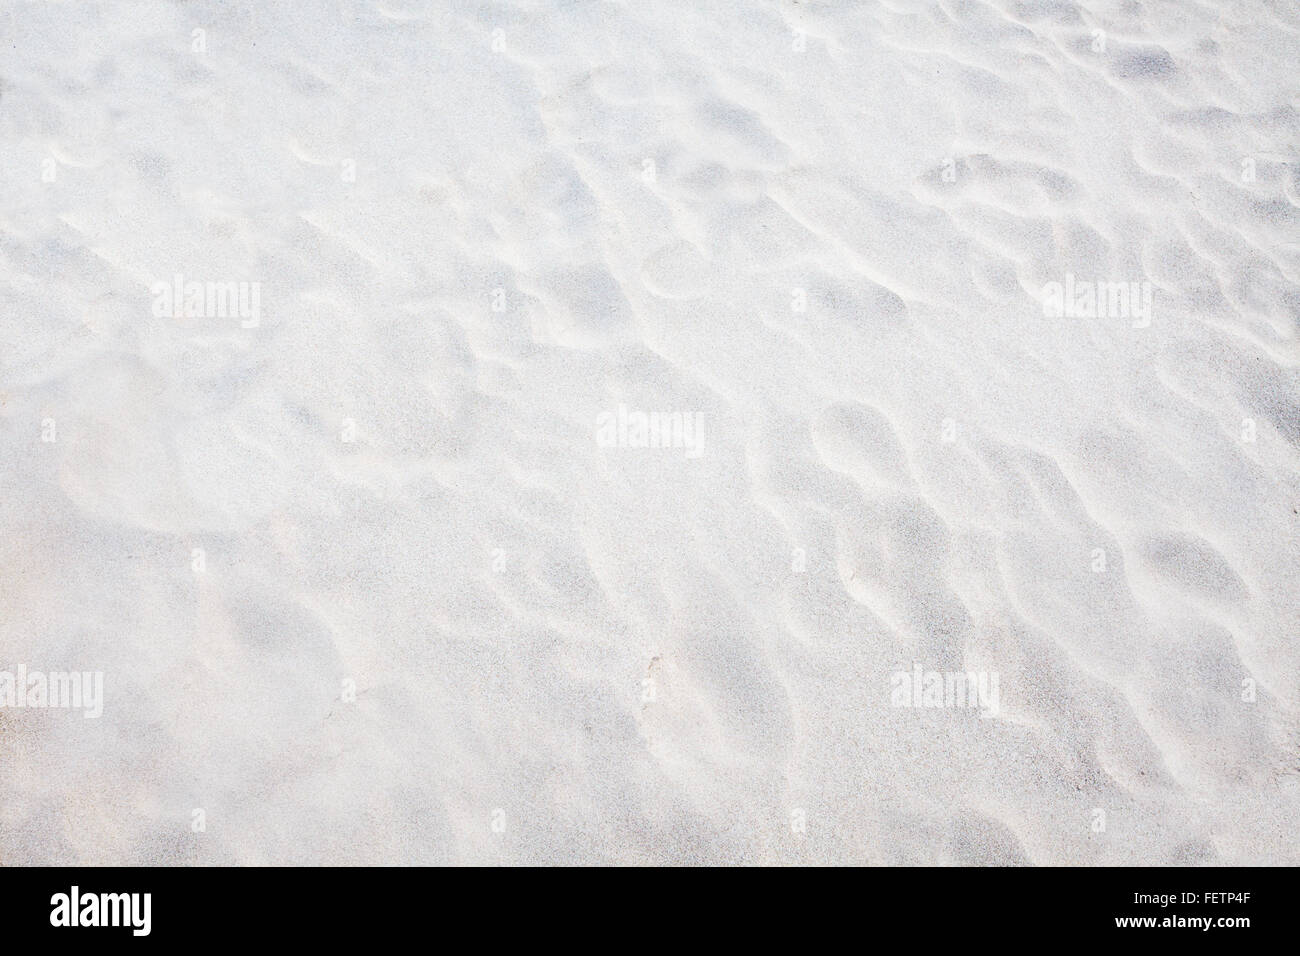 La sabbia bianca sullo sfondo Foto Stock